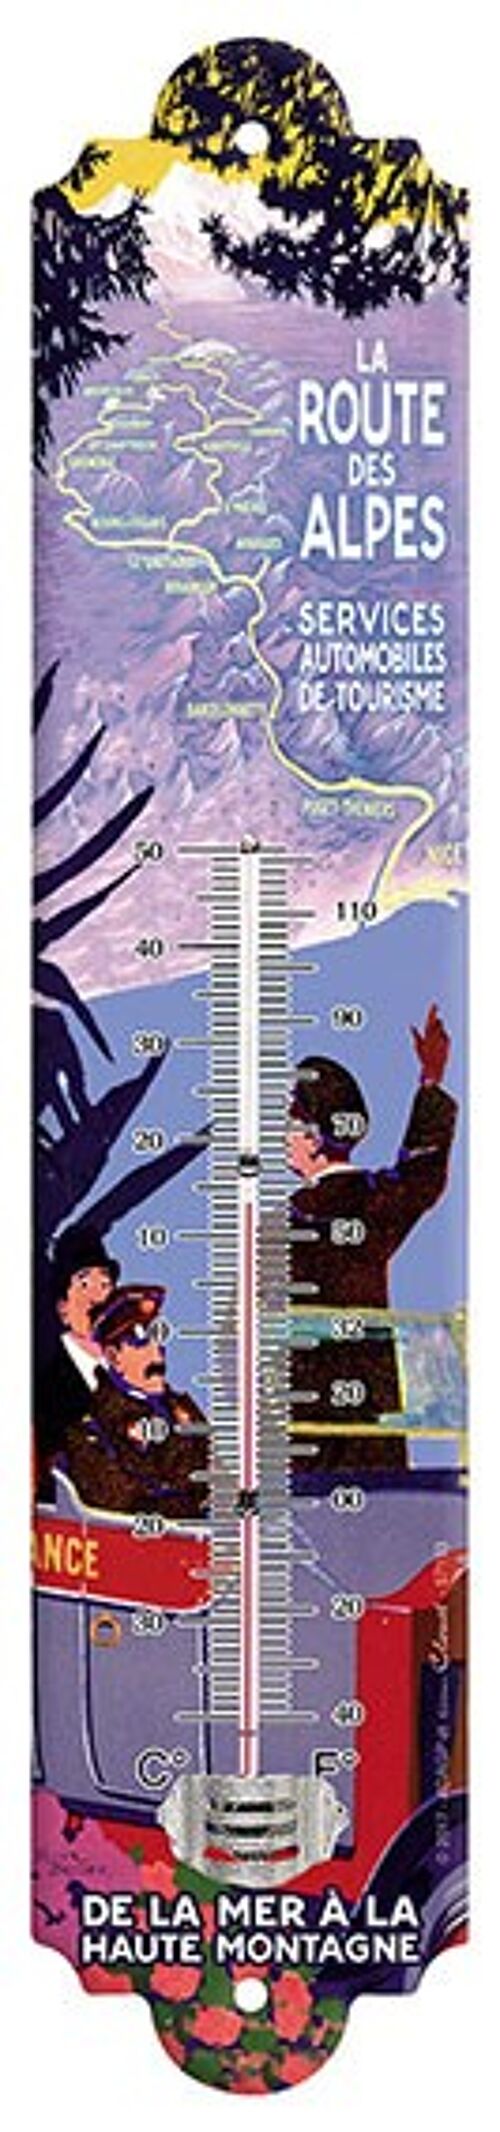 Thermomètre Vintage Route des alpes thermometre